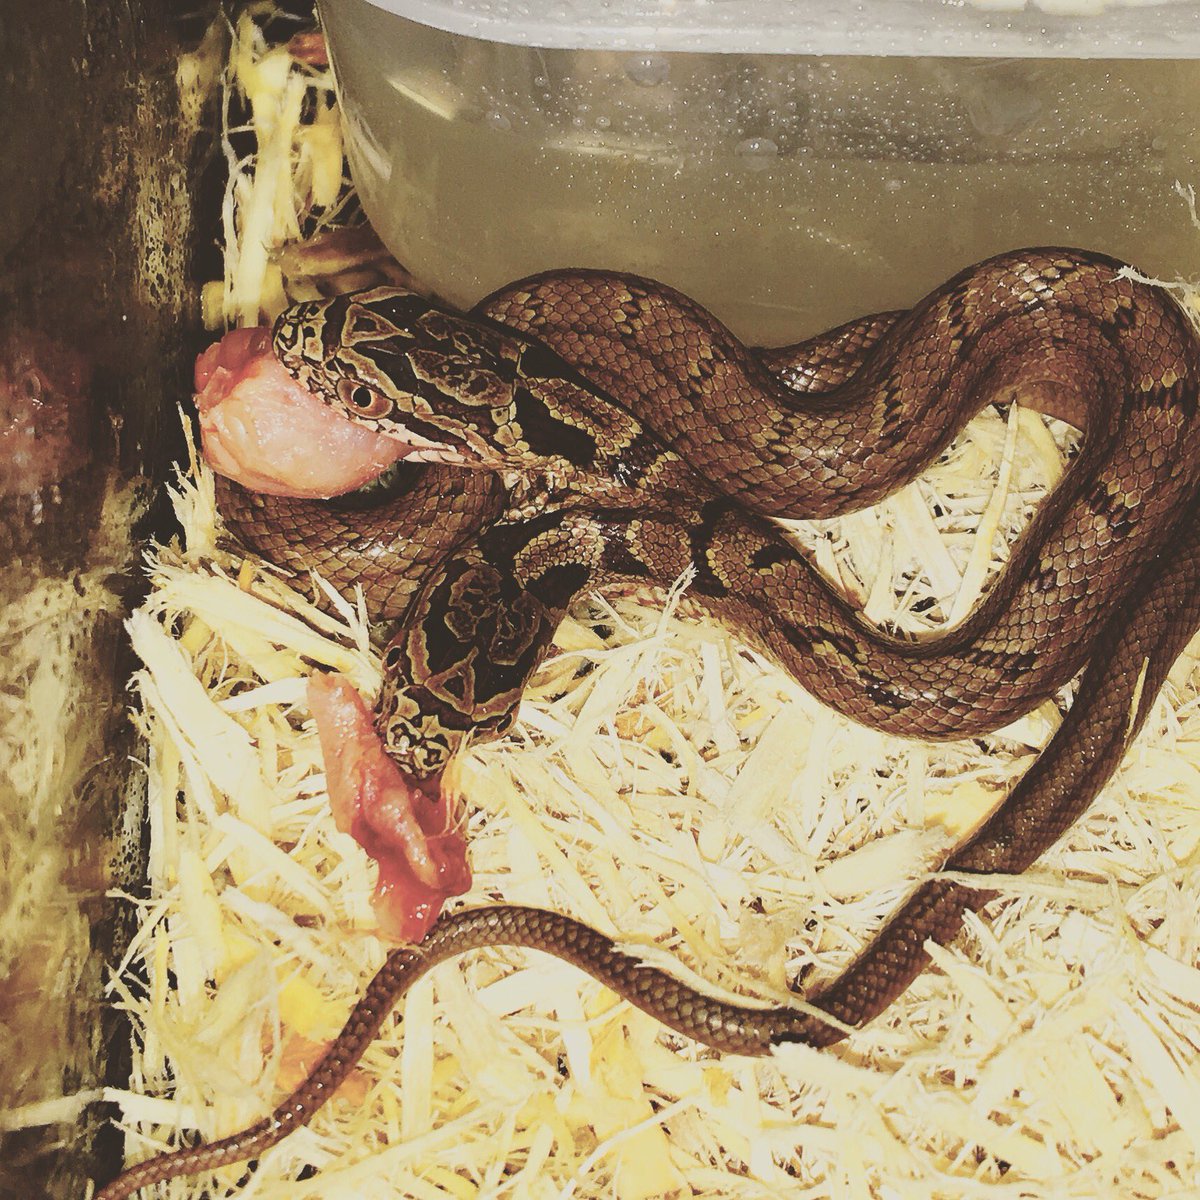 双頭の蛇 希少なシマヘビ 横浜市の爬虫類ショップで飼育 16年10月4日 Biglobeニュース